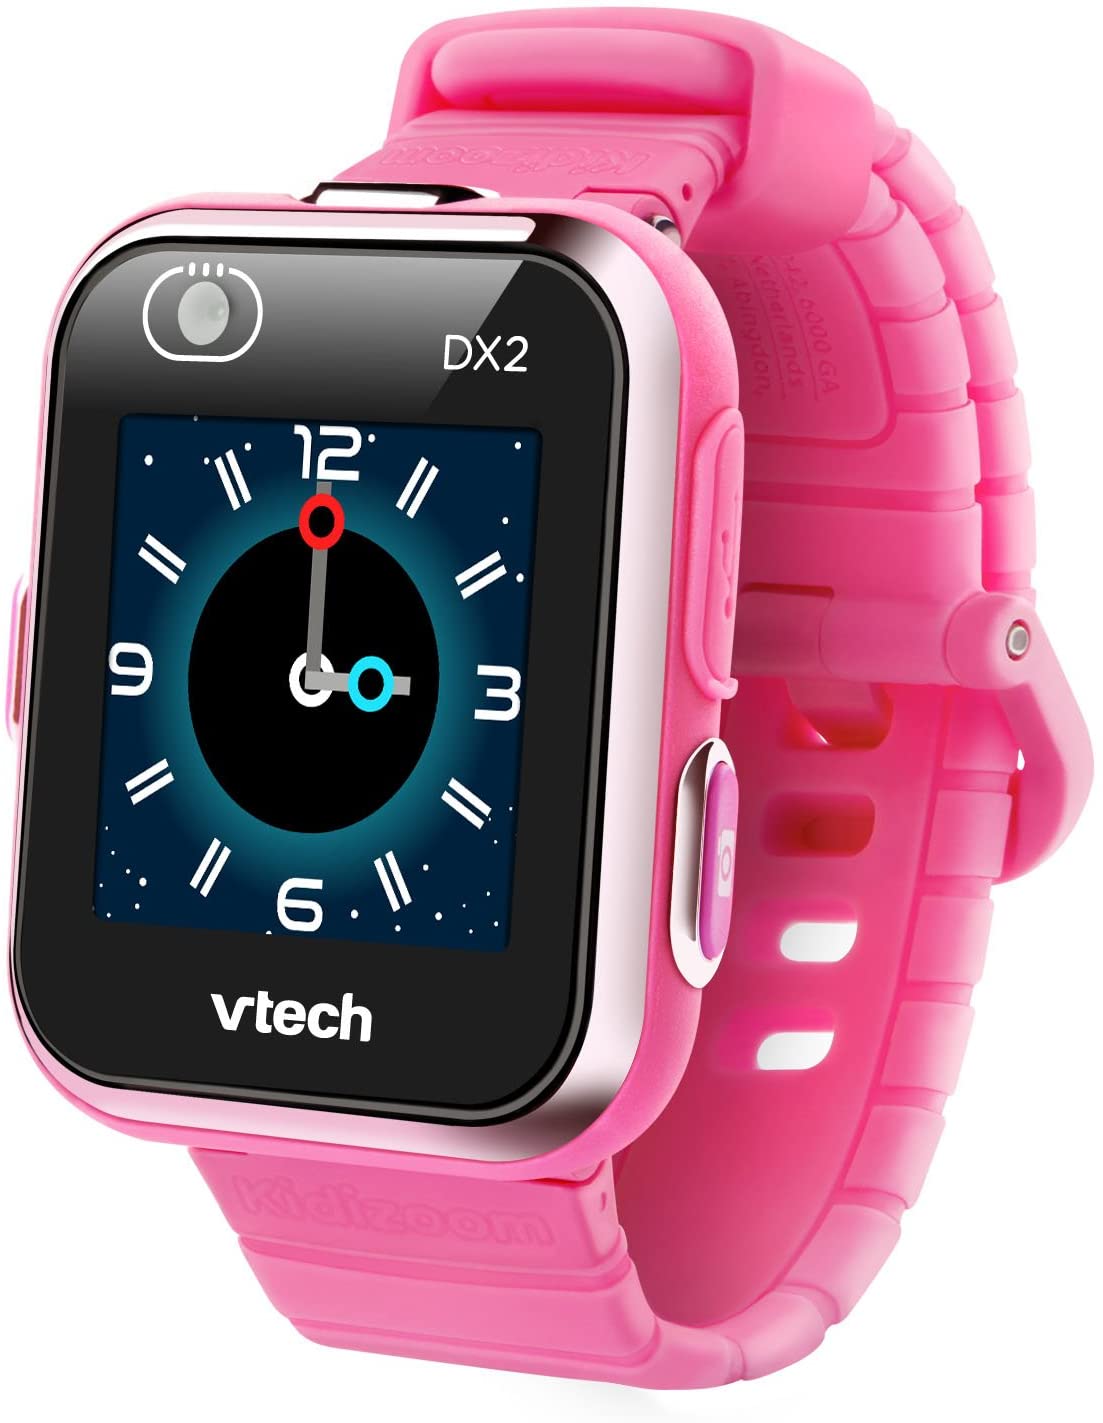 VTech Kidizoom Smartwatch DX2 Rosa - Inglês